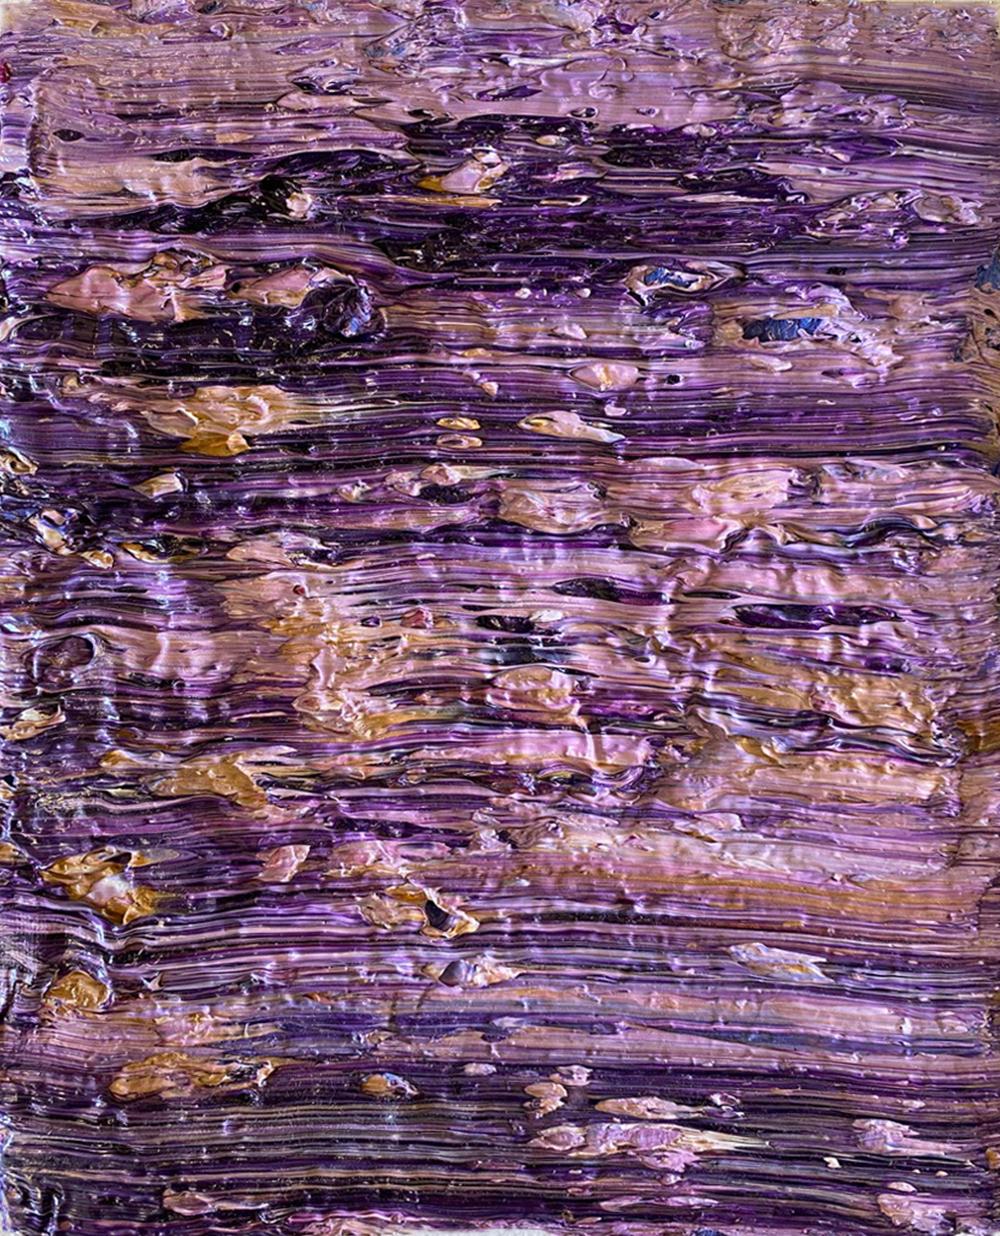 Ensemble de 16 peintures de Natasha Zupan
Huile, tissu, médium, or, encaustique sur toile
Taille totale : 38 in. H x 30 in. W x 3 in D.
Individuel Taille : 9.5 in. H x 7.5 in. W x 3 in D.
Unique en son